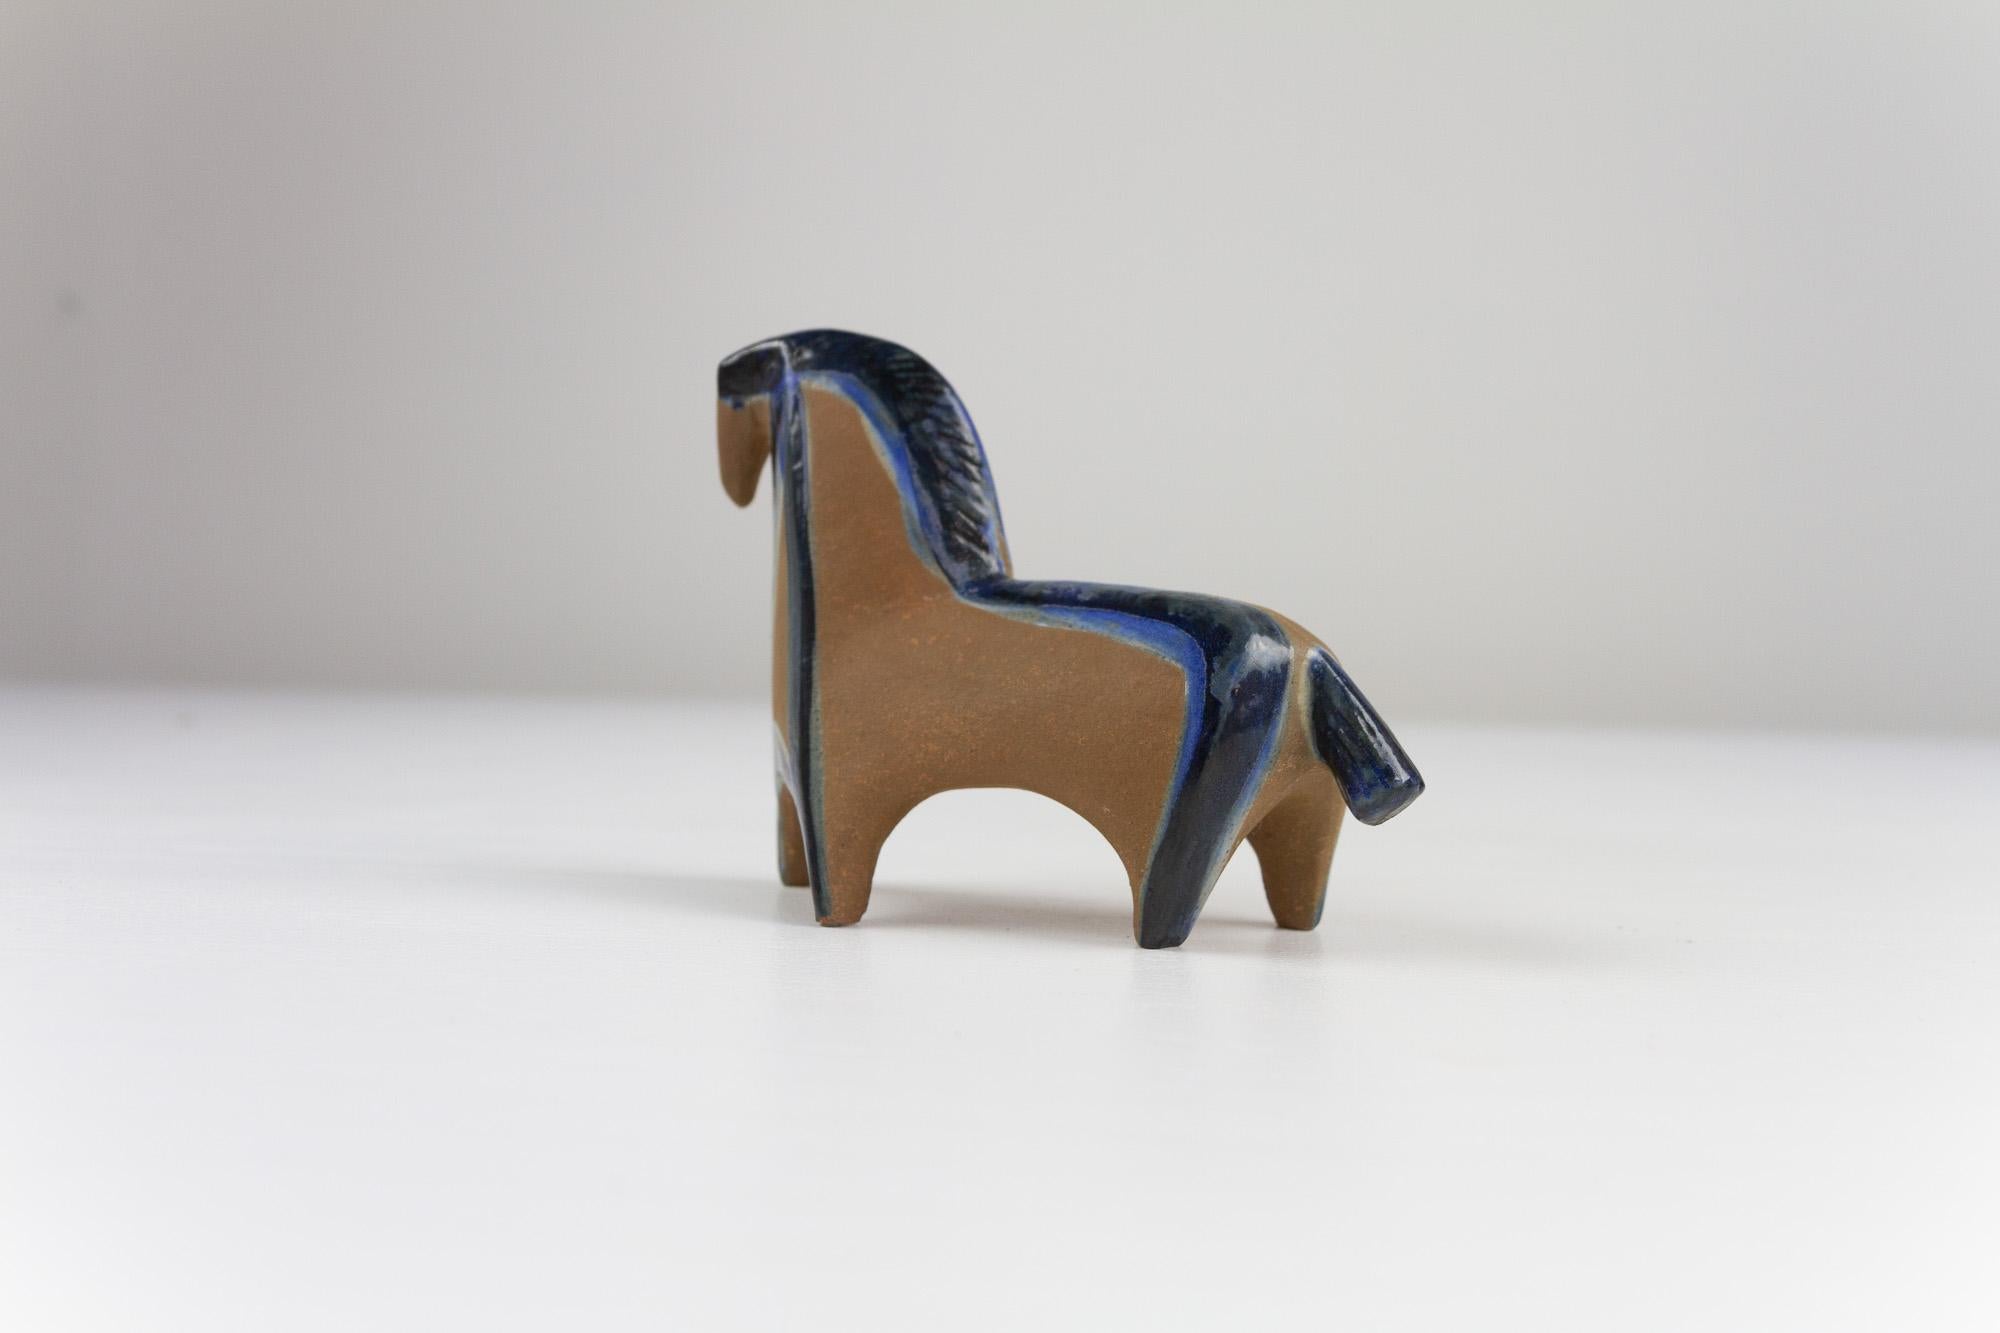 Cheval en grès suédois vintage de Lisa Larson pour Gustavsberg, années 1950.

Cette petite figurine de cheval en céramique The Modern Scandinavian fait partie de la collection Small Zoo. La série se compose de sept figurines d'animaux et a été